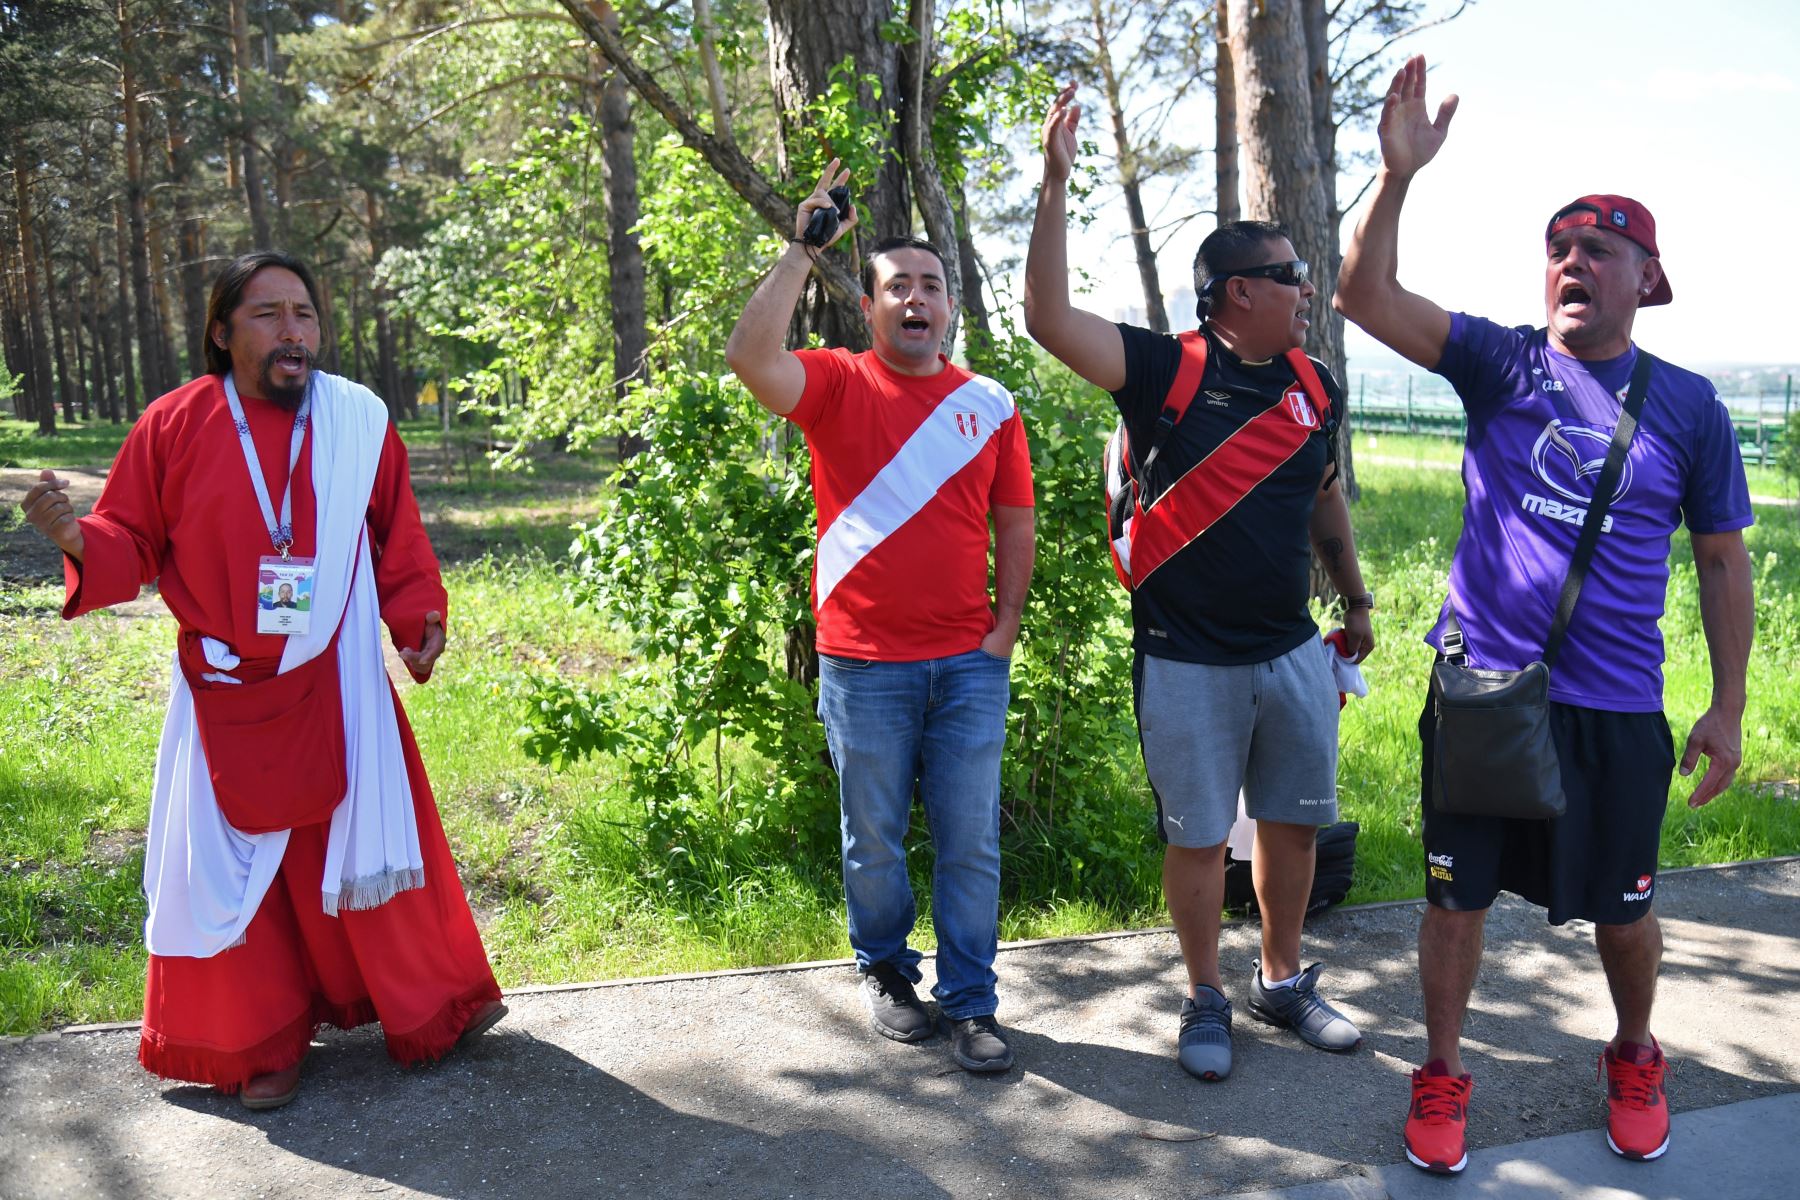 Los fanáticos peruanos hacen gestos y gritan en Ekaterimburgo el 20 de junio de 2018 en la víspera del partido de fútbol del Grupo C de la Copa Mundial de la FIFA 2018, Francia contra Perú. / AFP